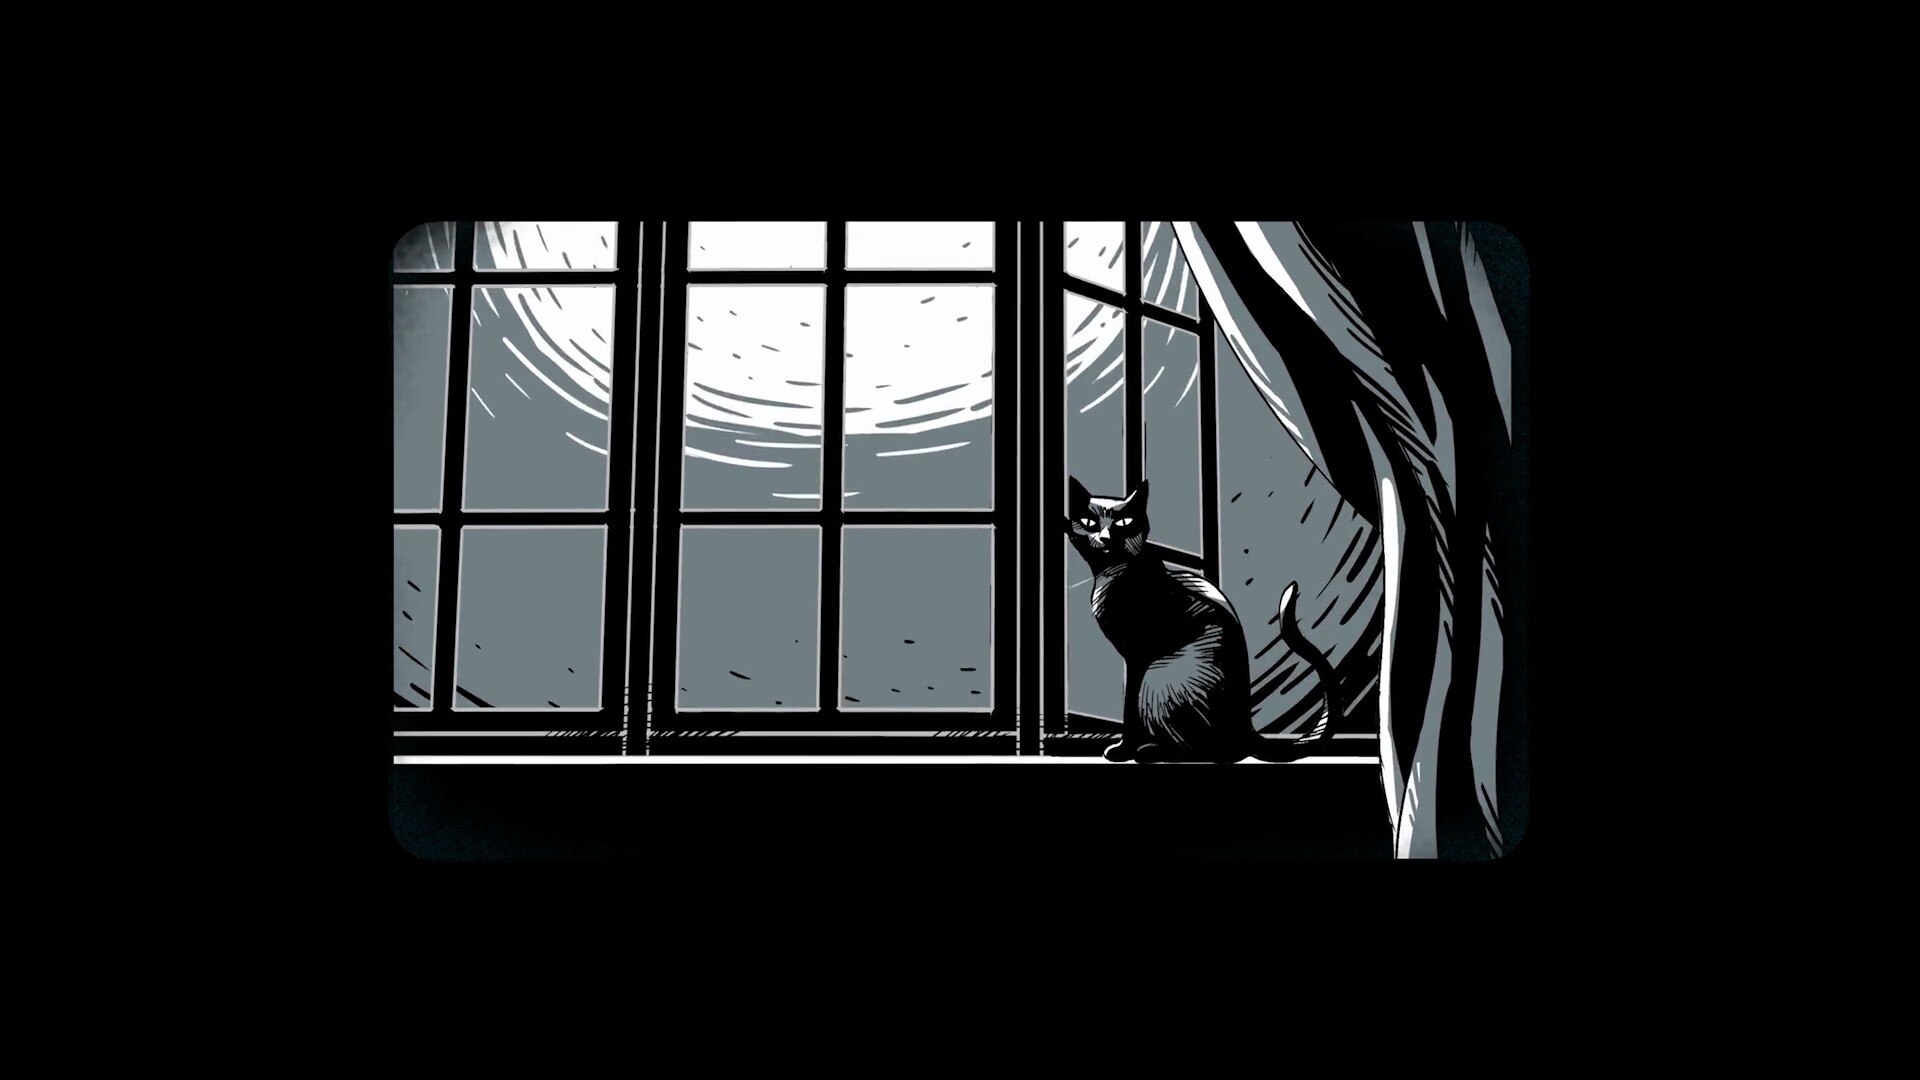 Посмотри в окно песня. Ночной театр теней. Черный кот на окне. Театр теней твоя тень 2007. Человек и кошка плачут у окошка рисунок.